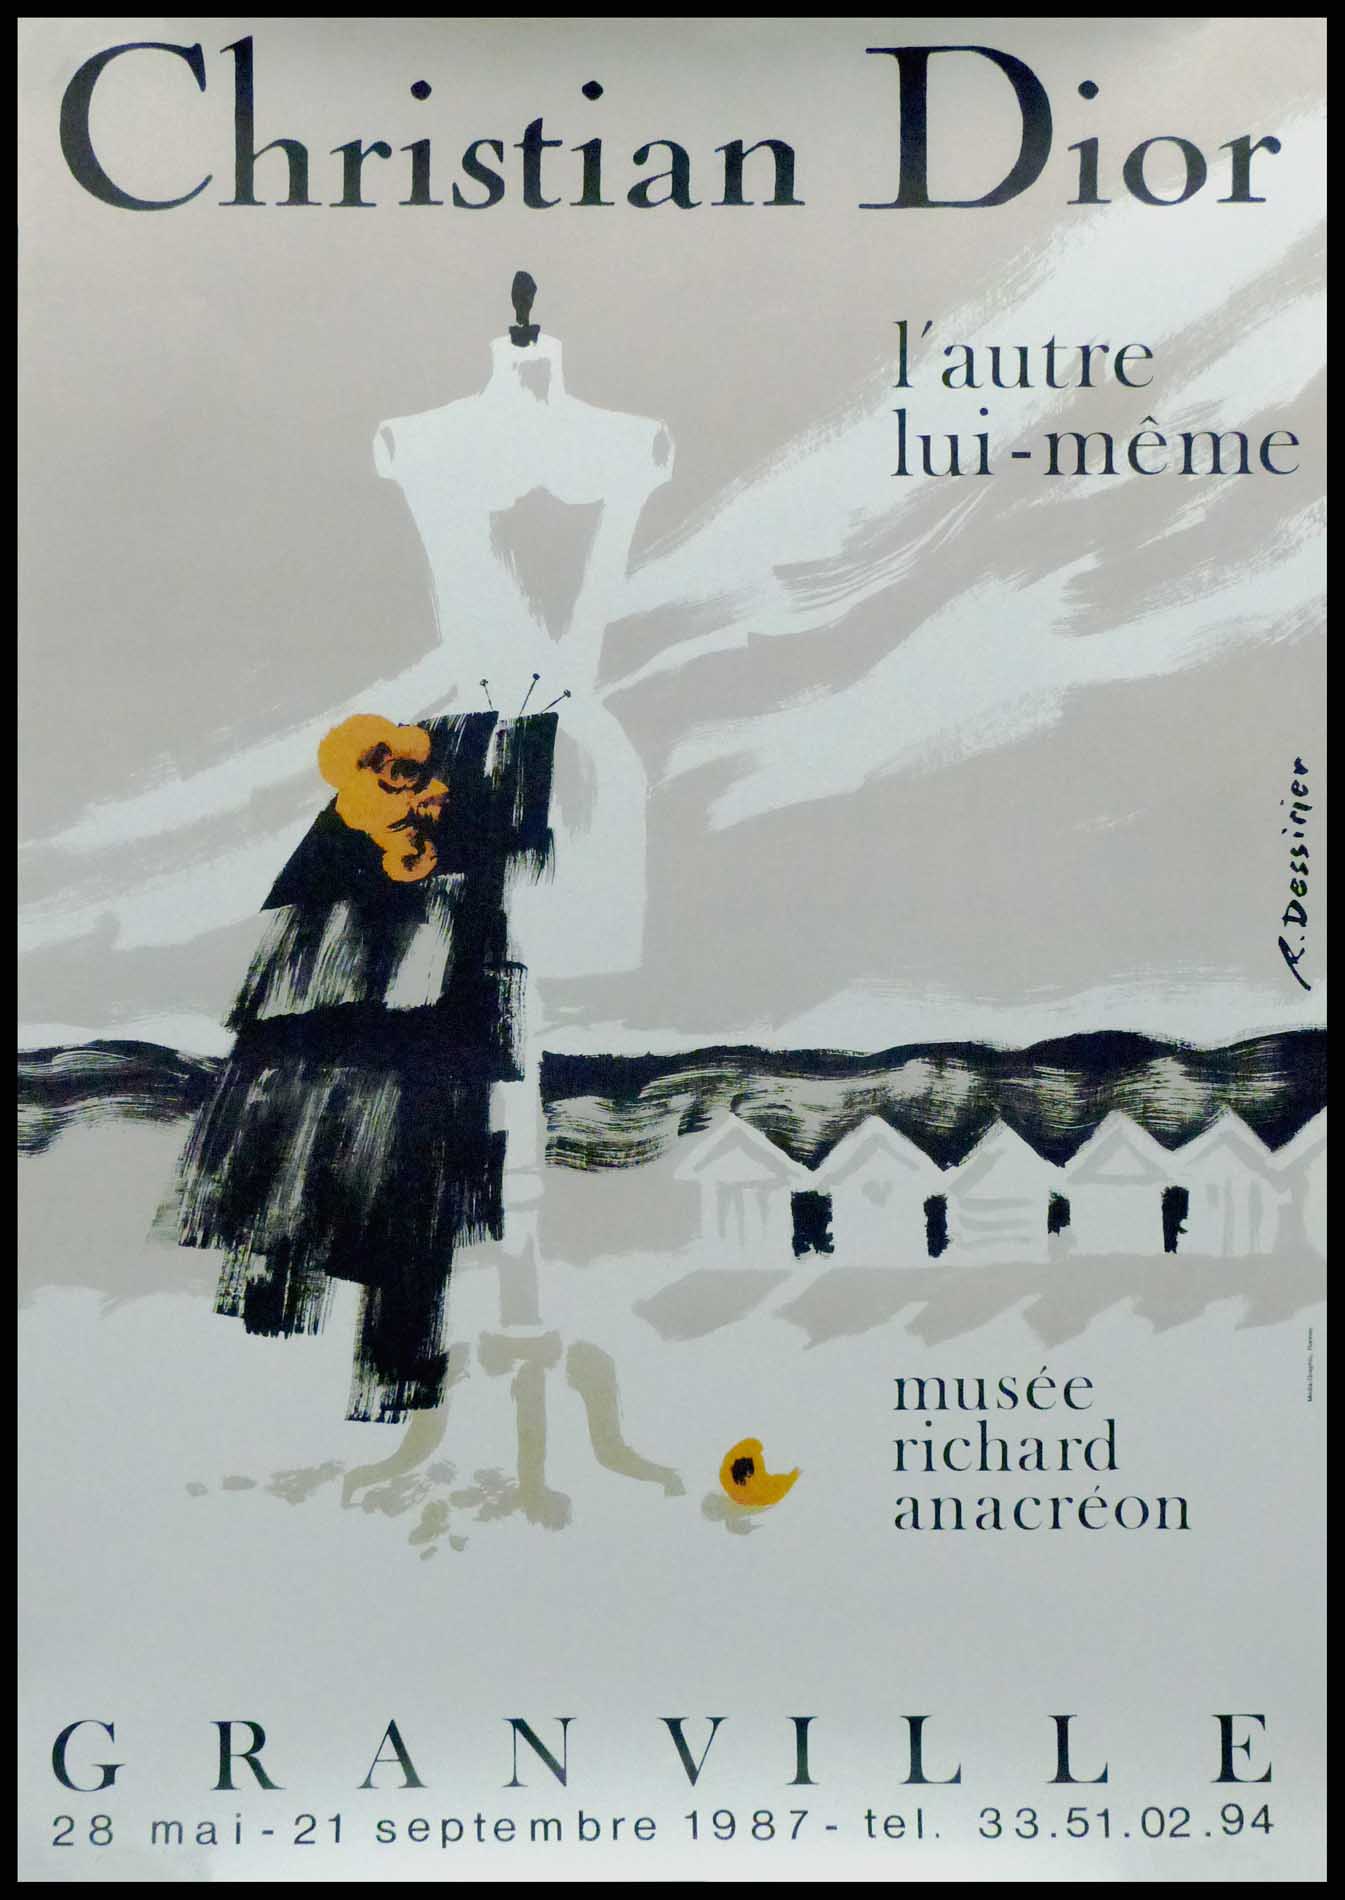 René DESSISIRIER - Christian DIOR, 1987 - Original poster - Post War &  Modern Art - Plazzart